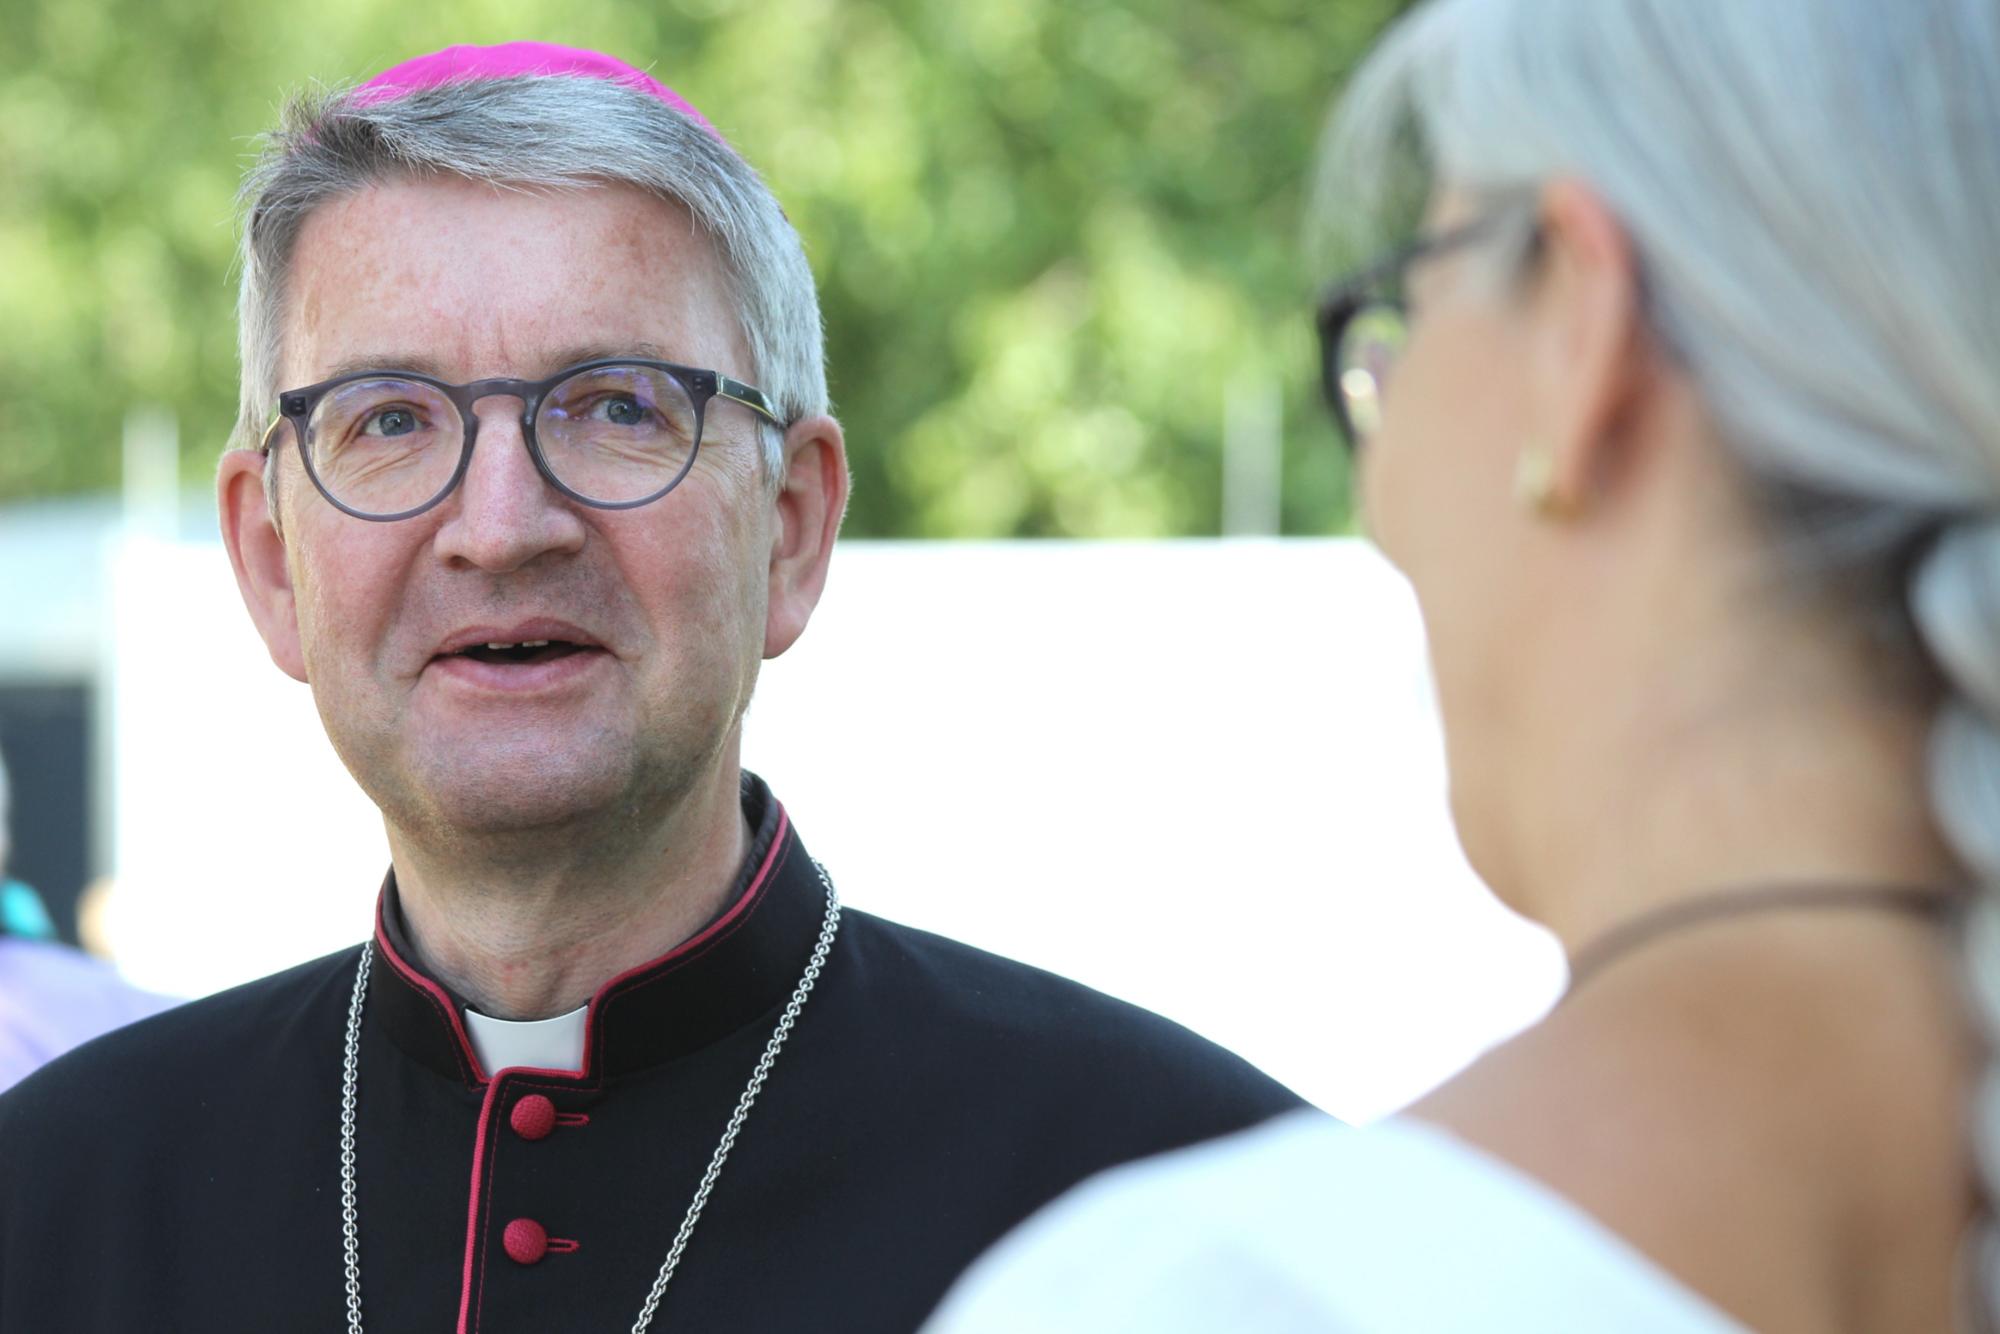 Büchel, 3. Juli 2021: Bischof Peter Kohlgraf im Gespräch beim vierten Aktionstag für eine atomwaffenfreie Welt. (c) Bistum Mainz / Blum